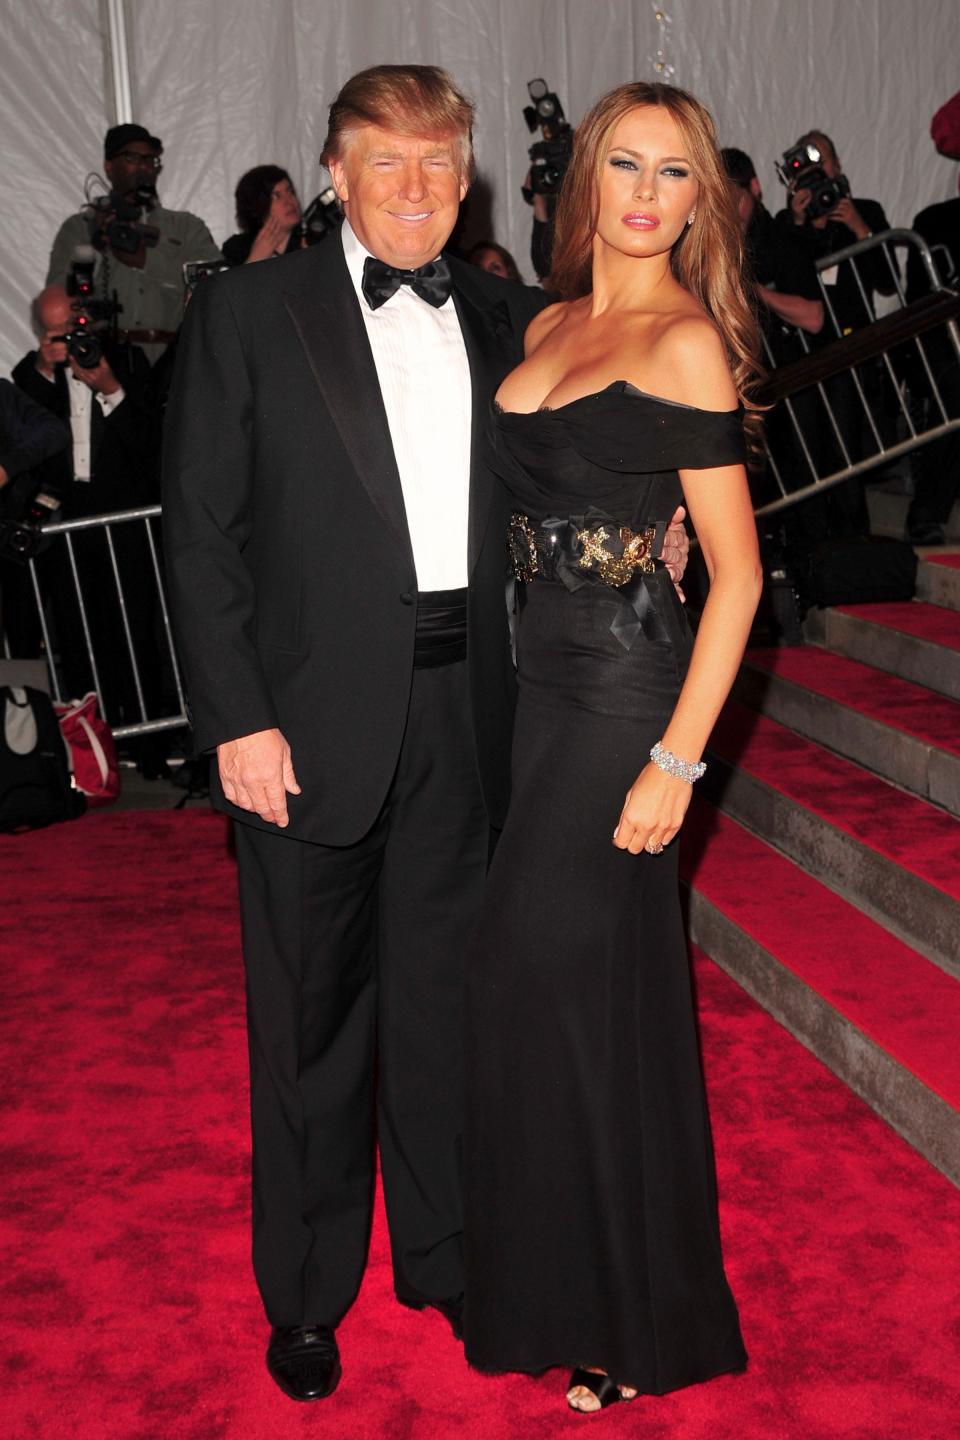 Donald Trump and Melania Trump at the Met Gala in 2009